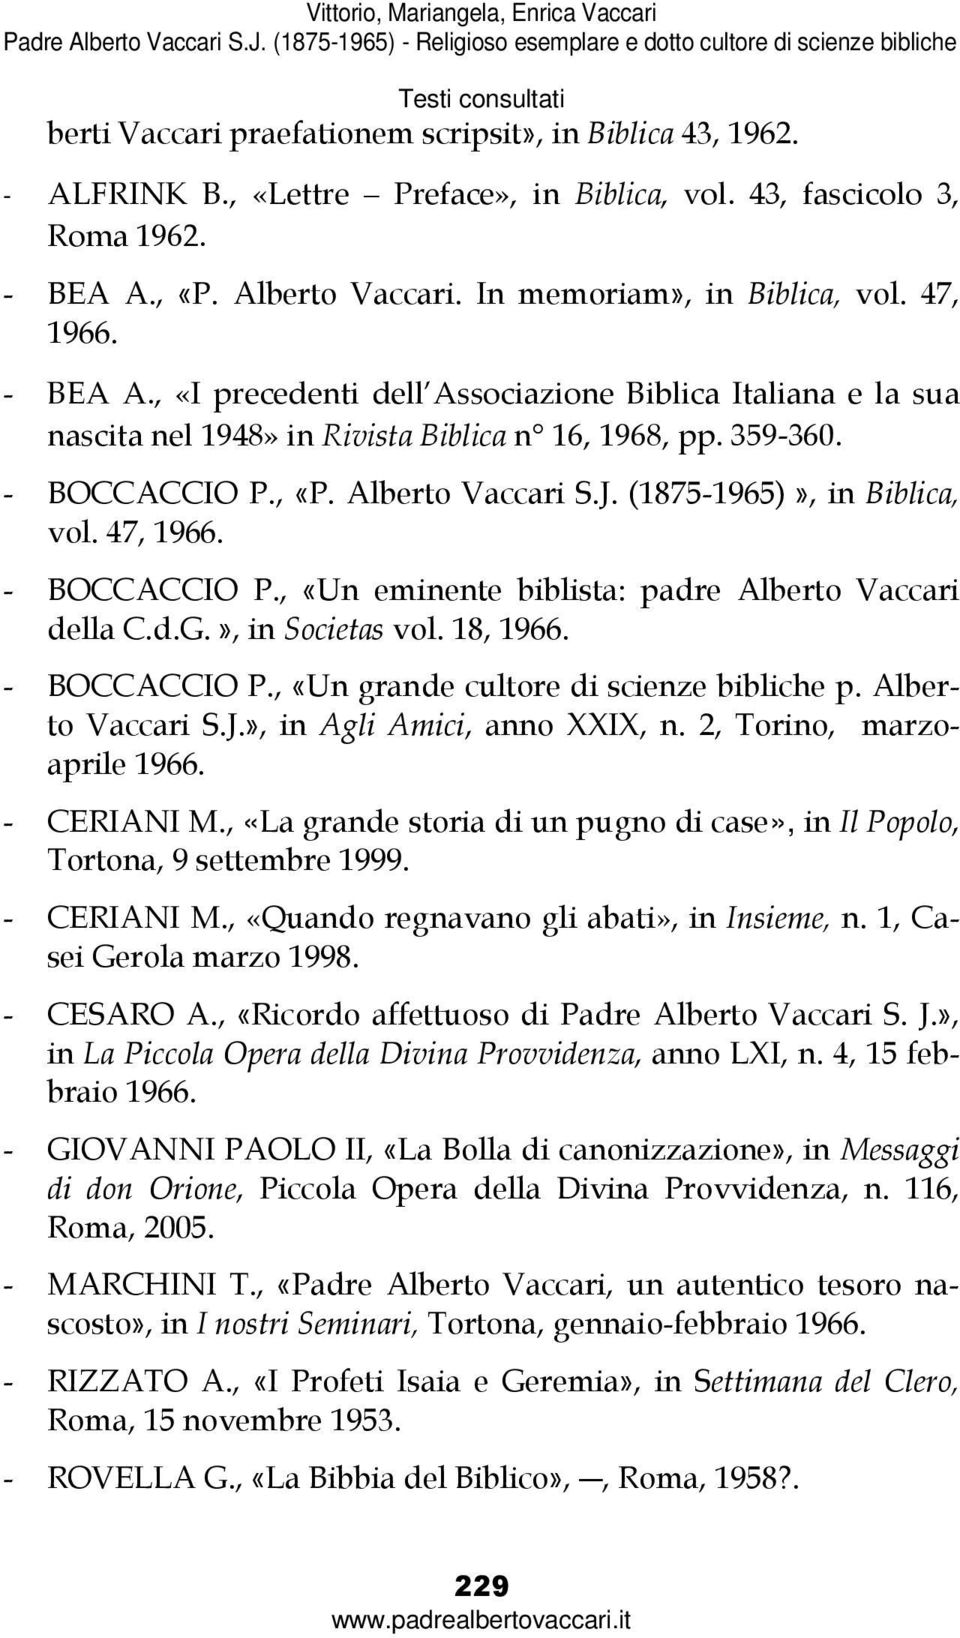 (1875-1965)», in Biblica, vol. 47, 1966. - BOCCACCIO P., «Un eminente biblista: padre Alberto Vaccari della C.d.G.», in Societas vol. 18, 1966. - BOCCACCIO P., «Un grande cultore di scienze bibliche p.